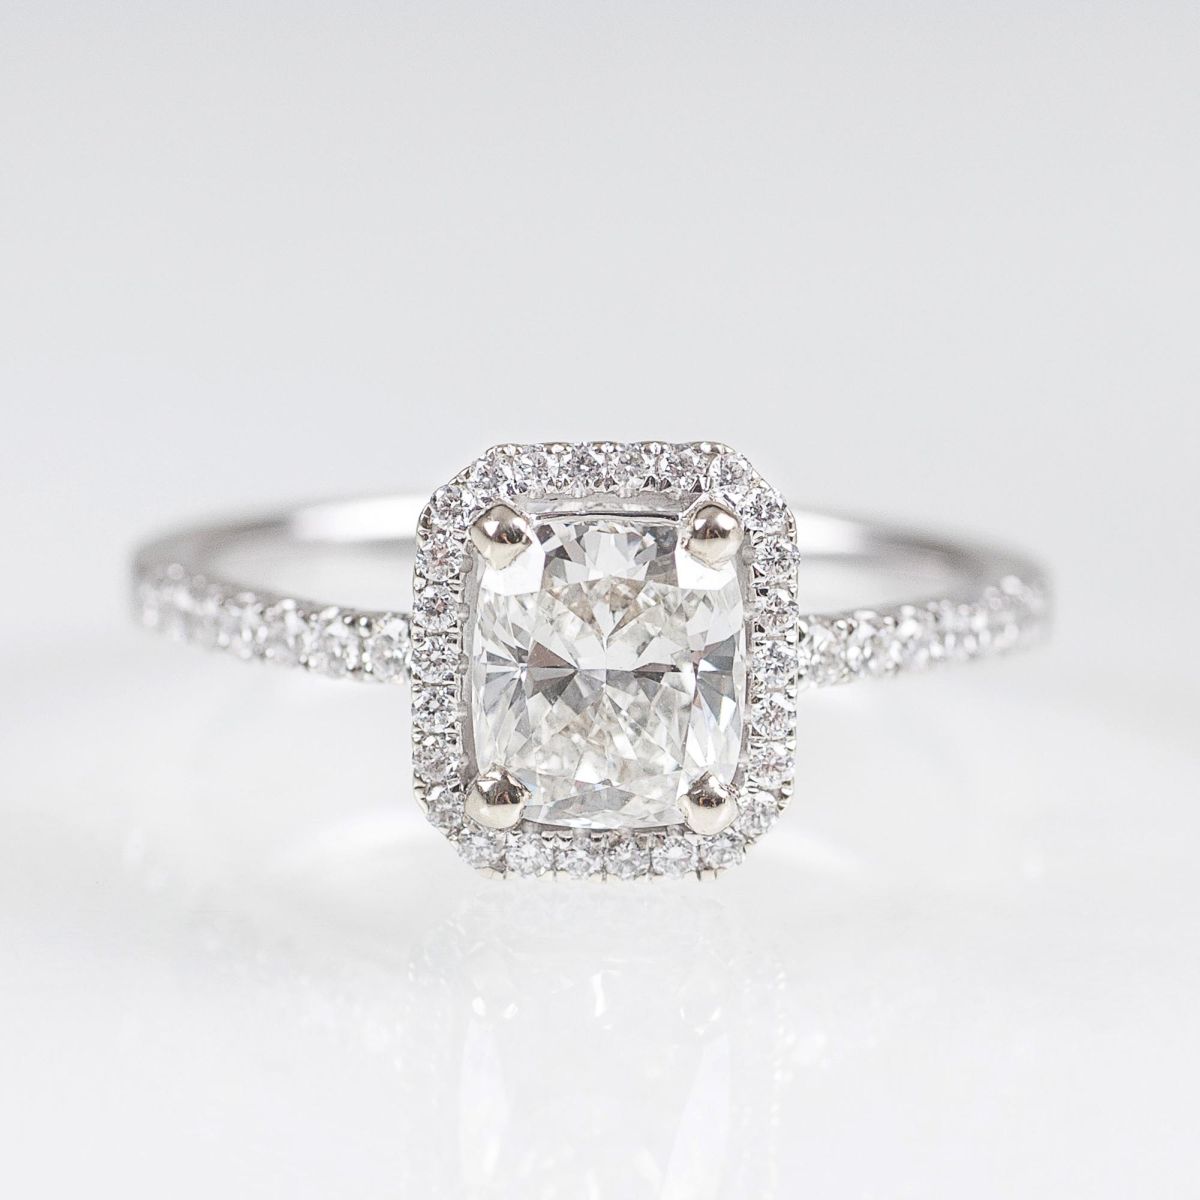 A fine Solitaire Diamond Ring